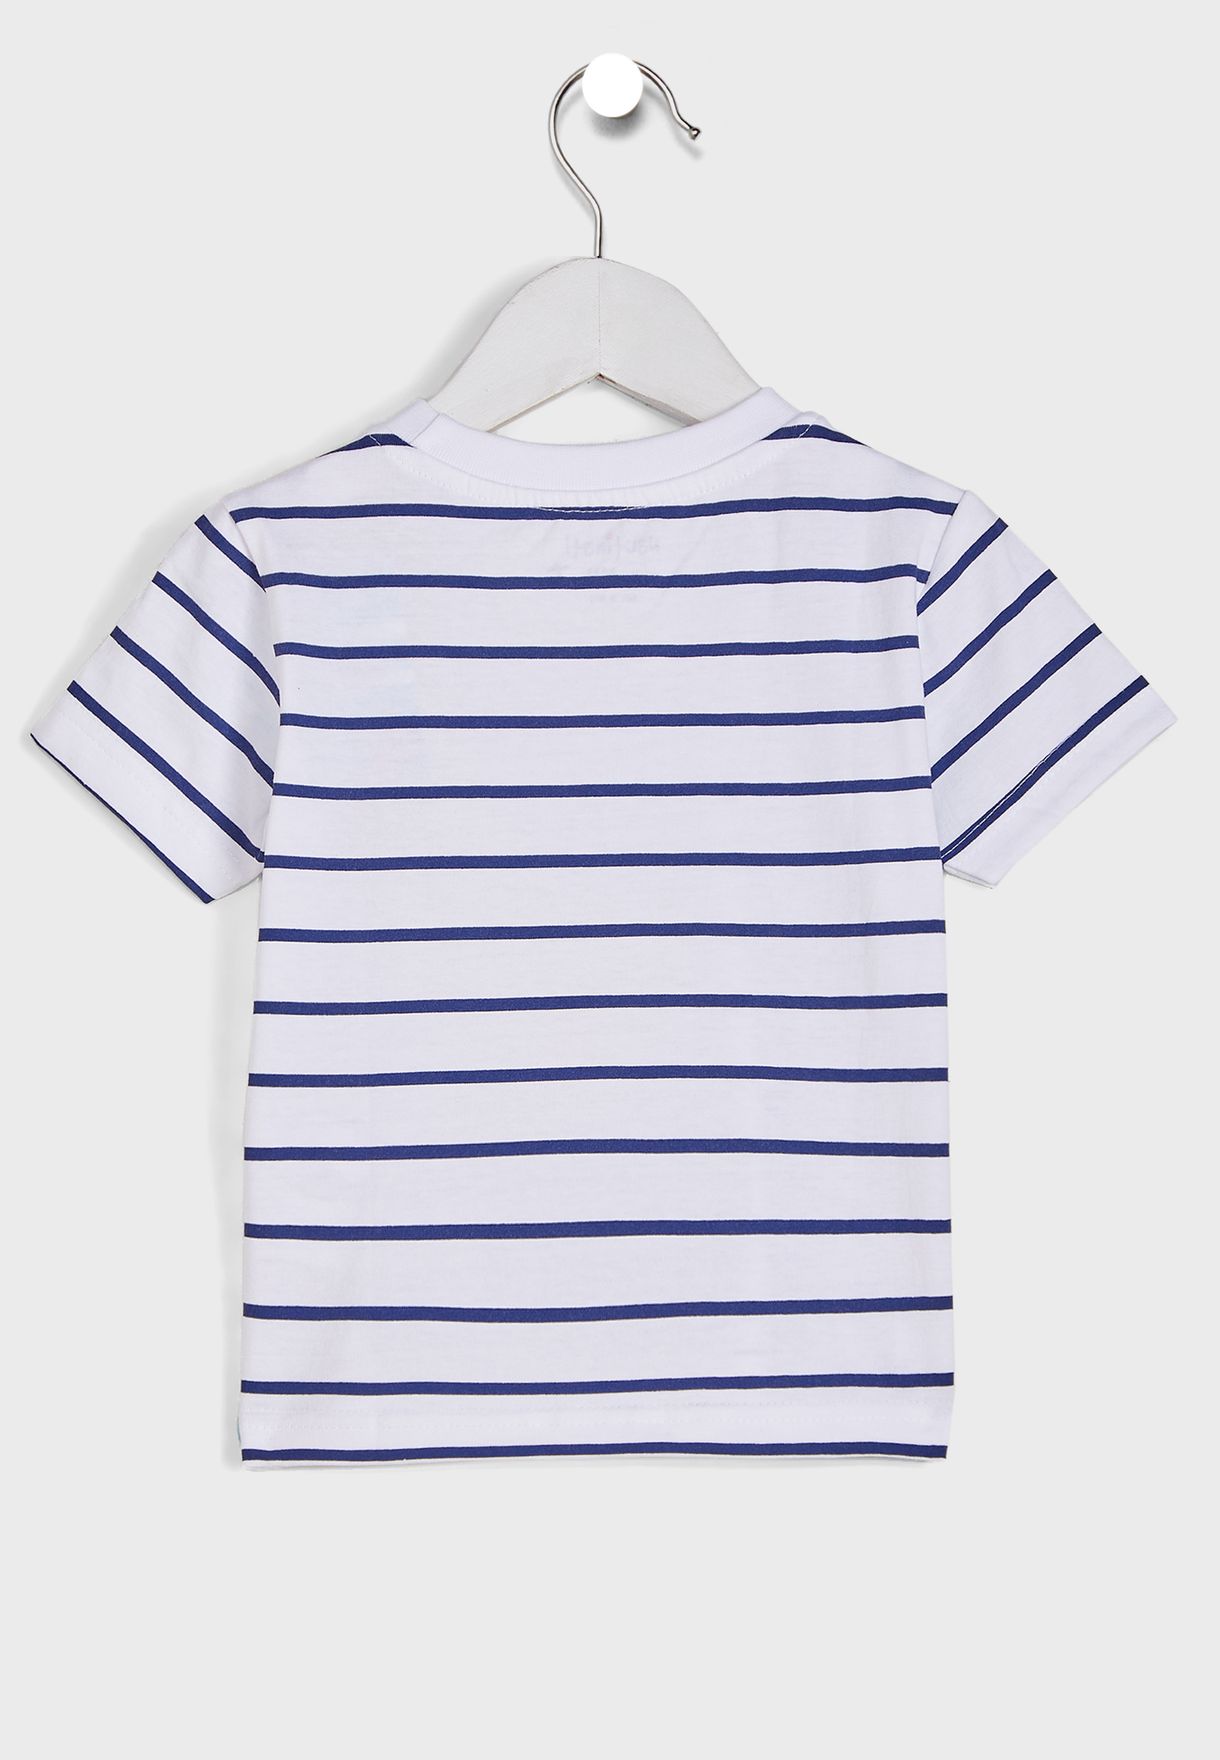 Round Neck Striped T-Shirt